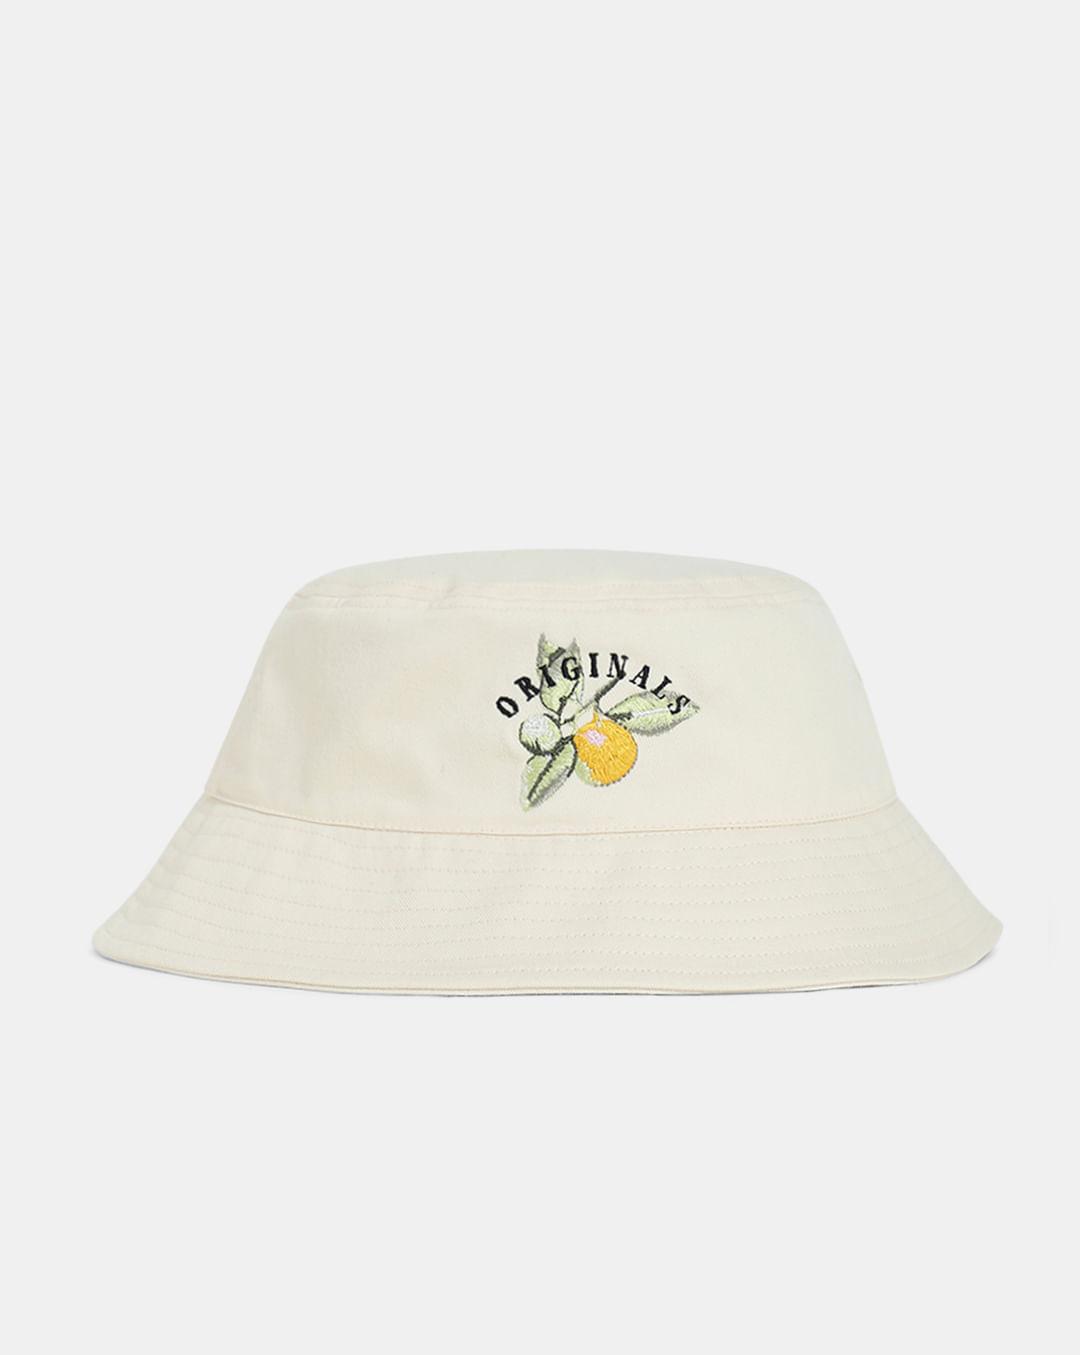 cream linen bucket hat